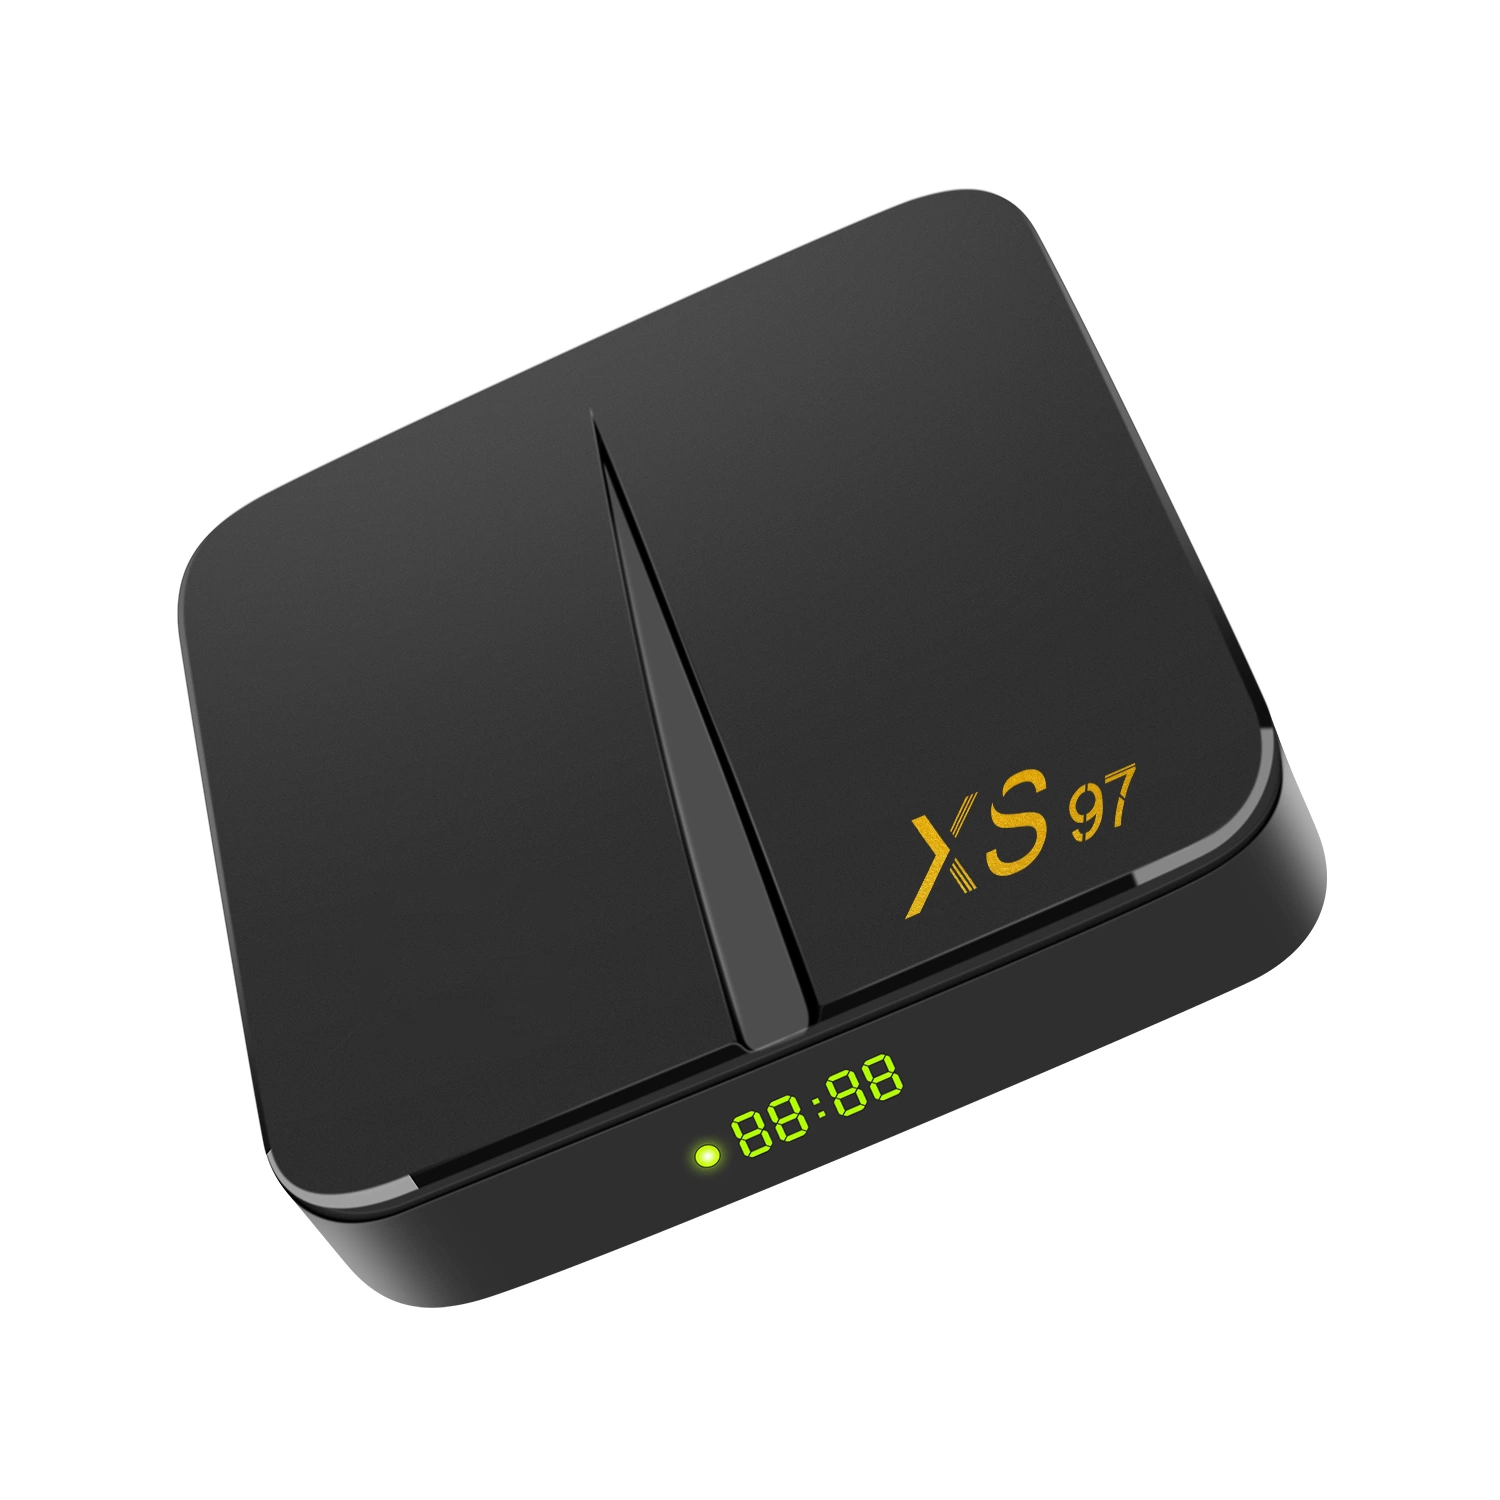 2022 تلفزيون ستالايت Xs97 Smart sette الجديد بنظام Android 11 جهاز الاستقبال استبدال جهاز فك التشفير DVB T2